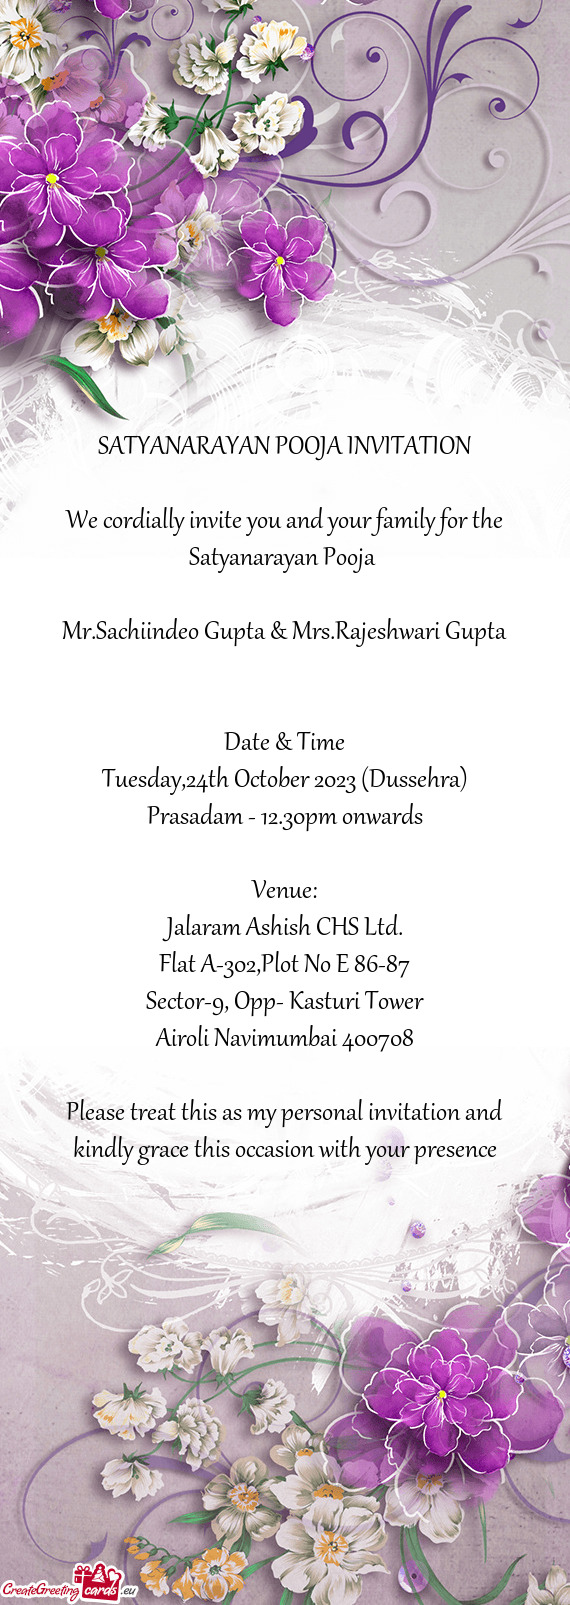 Mr.Sachiindeo Gupta & Mrs.Rajeshwari Gupta